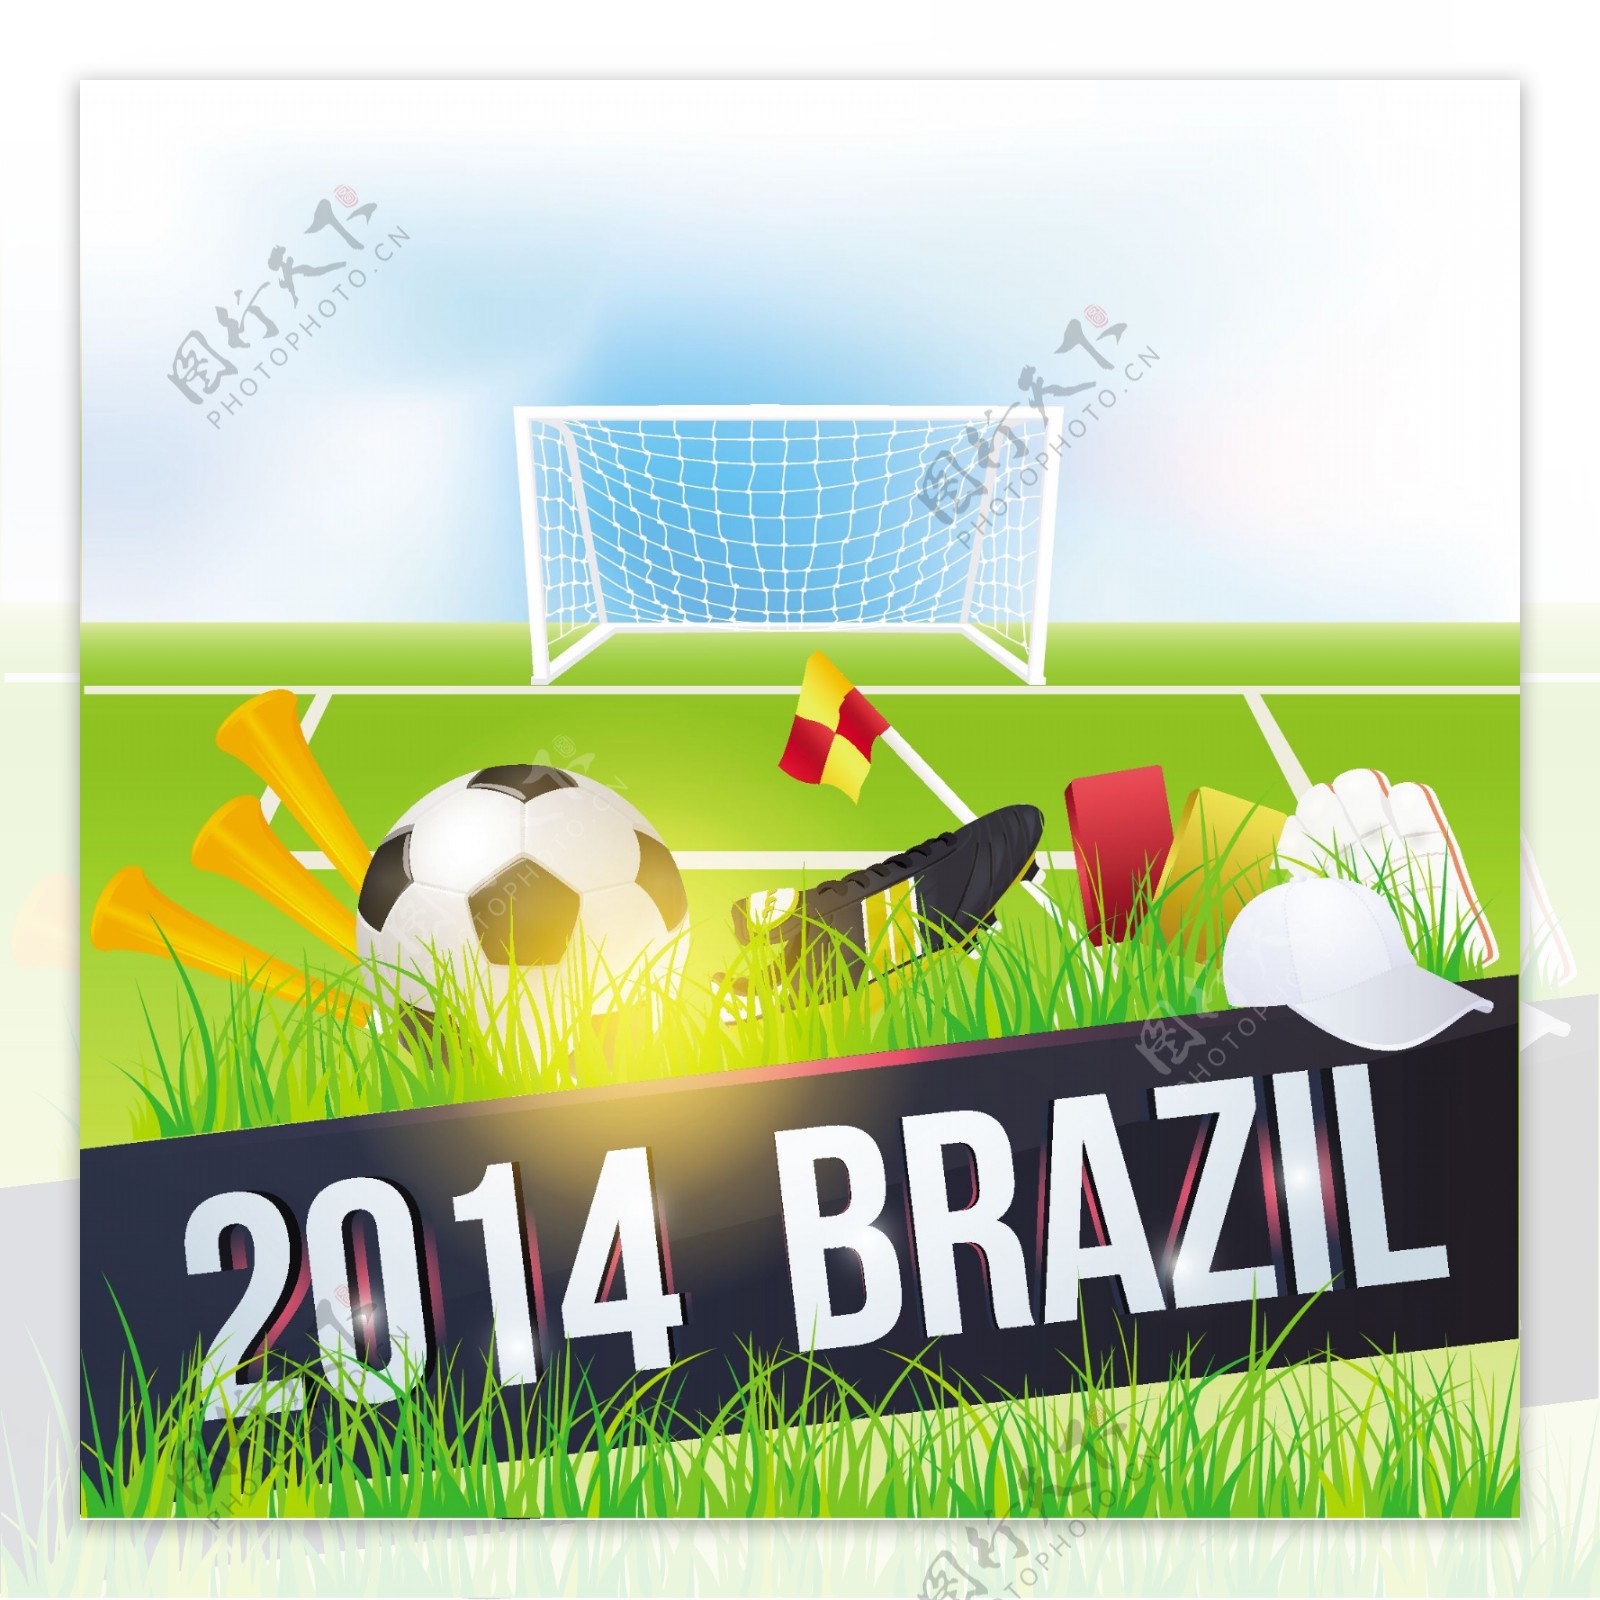 创意巴西世界杯海报